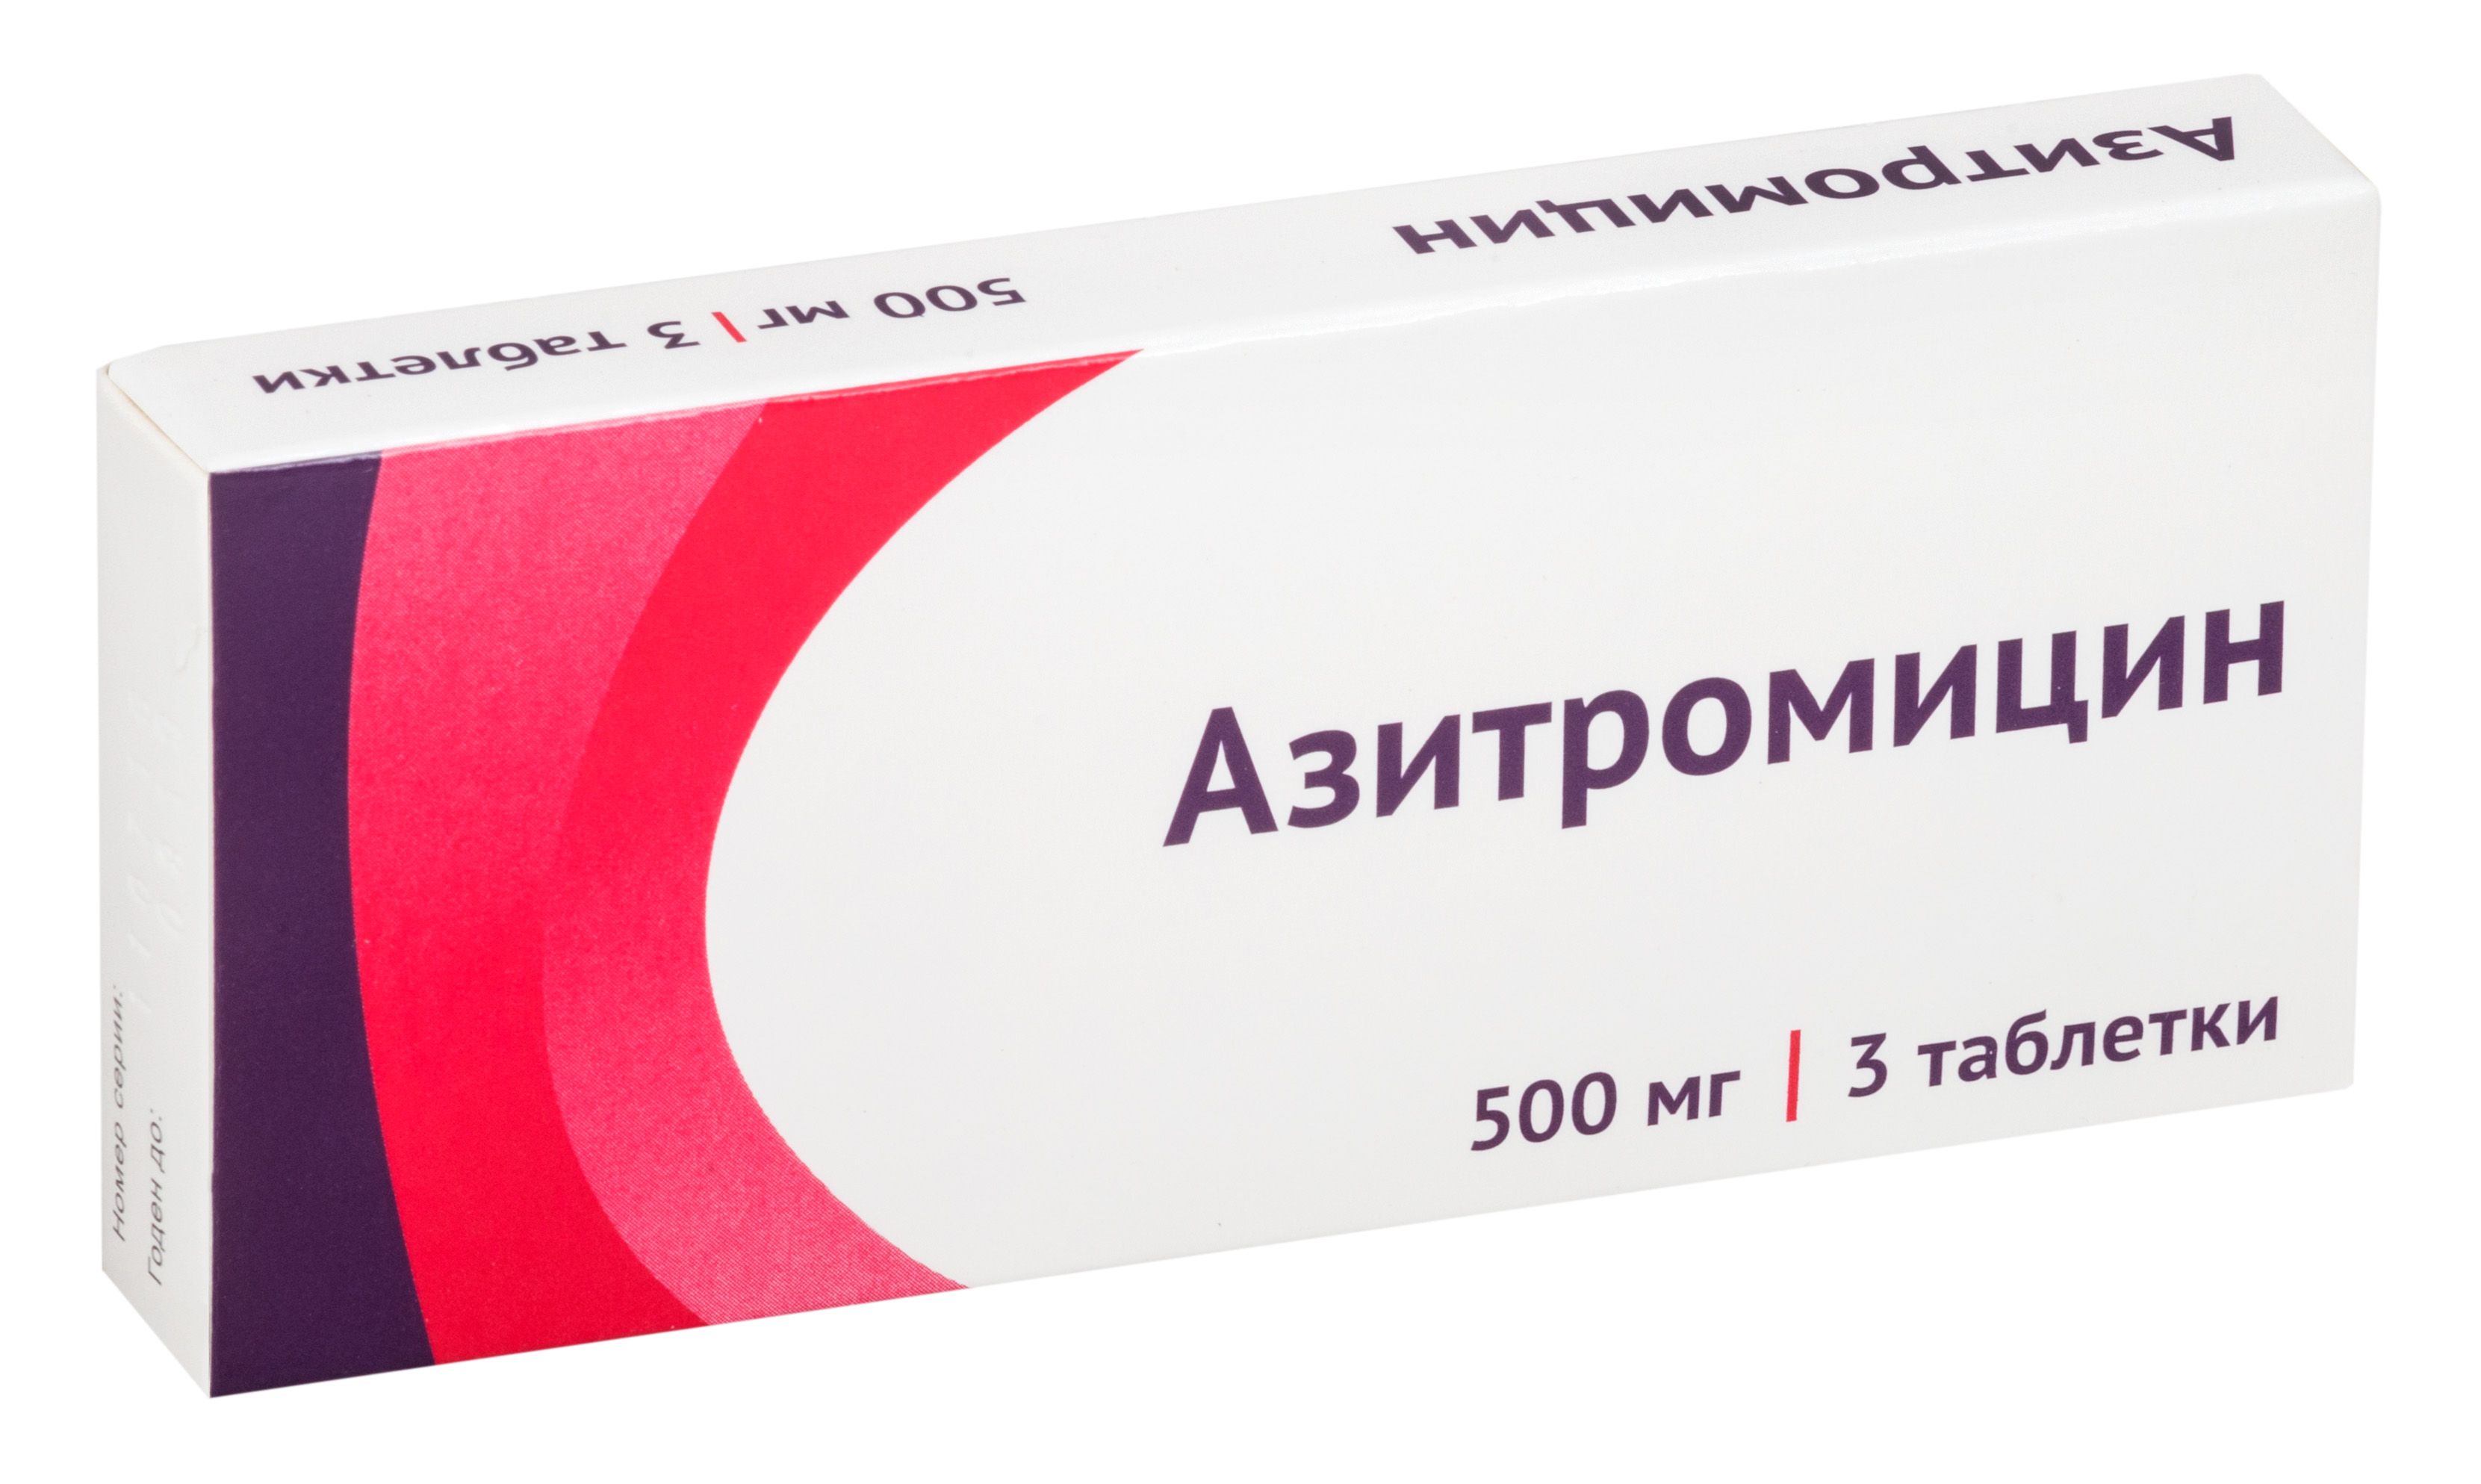 500 أزيثروميسين ازيثروميسين اقراص